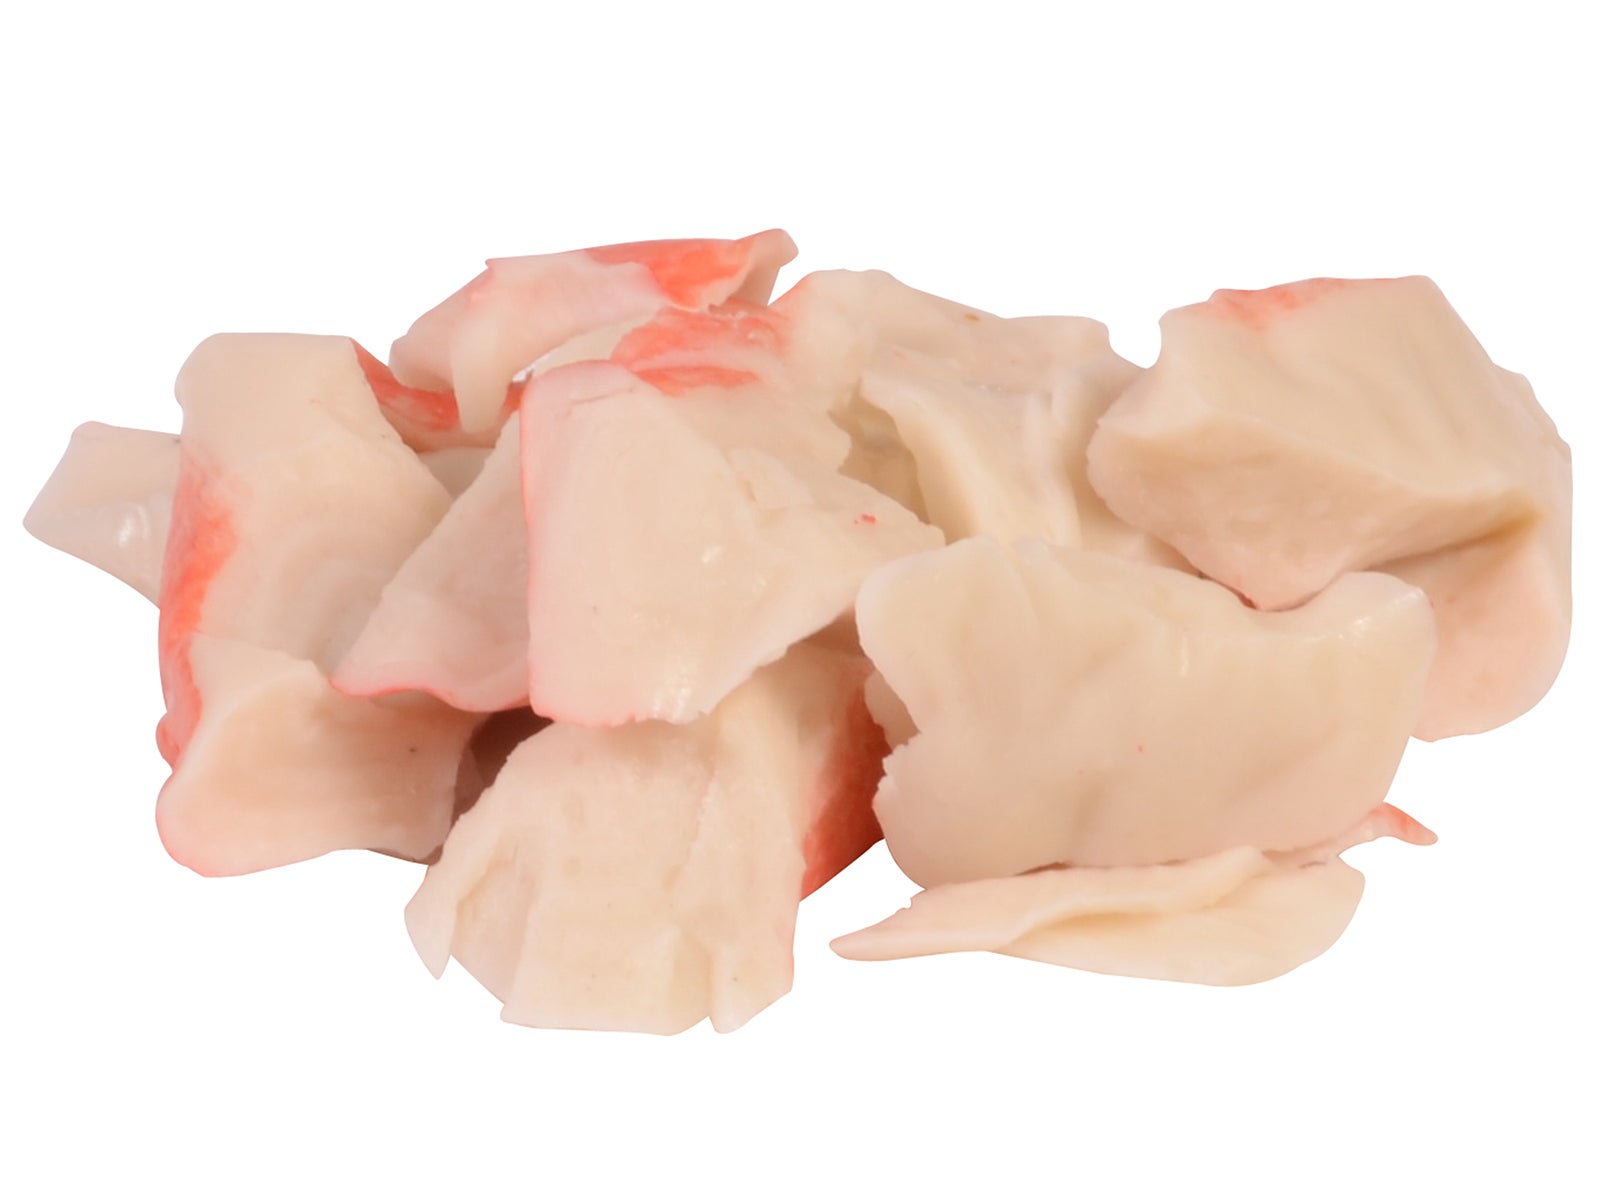 Sea Shells® Flake Style Surimi Seafood slide 1